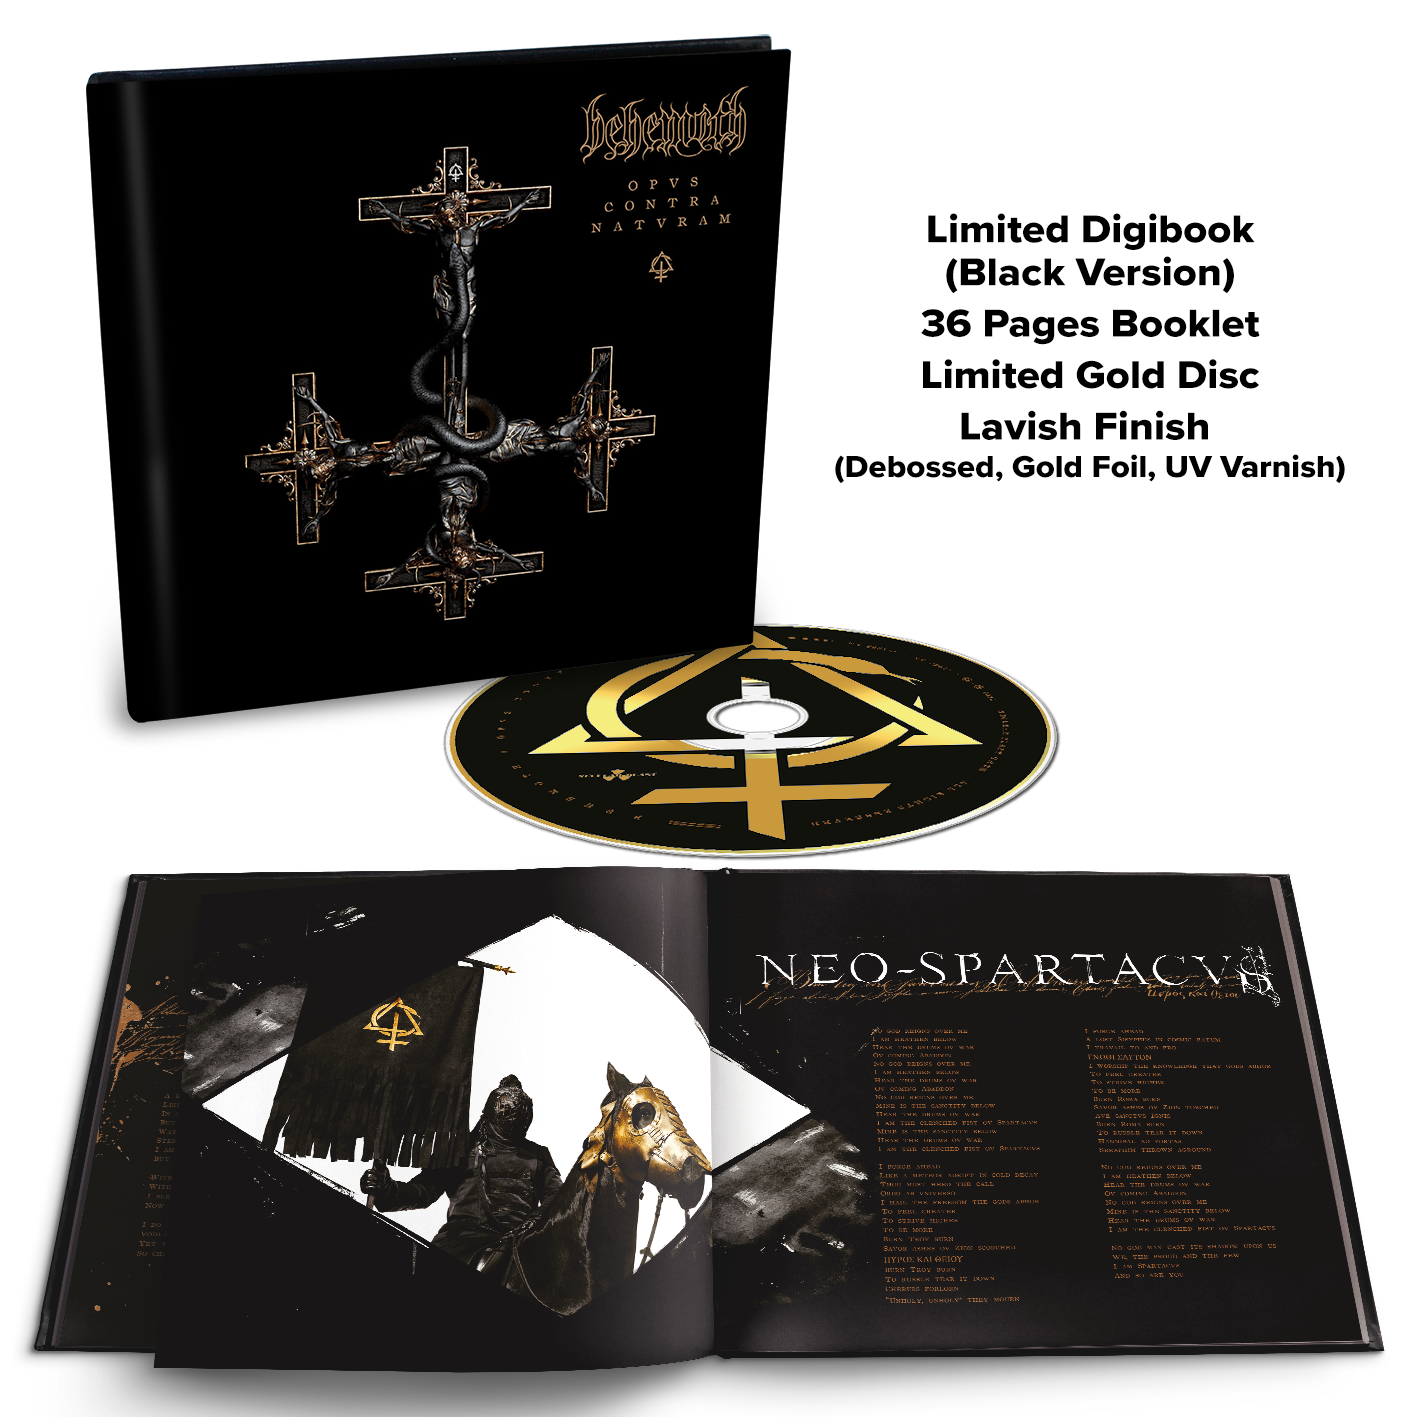 Opvs Contra Natvram: Limited Edition Digibook CD